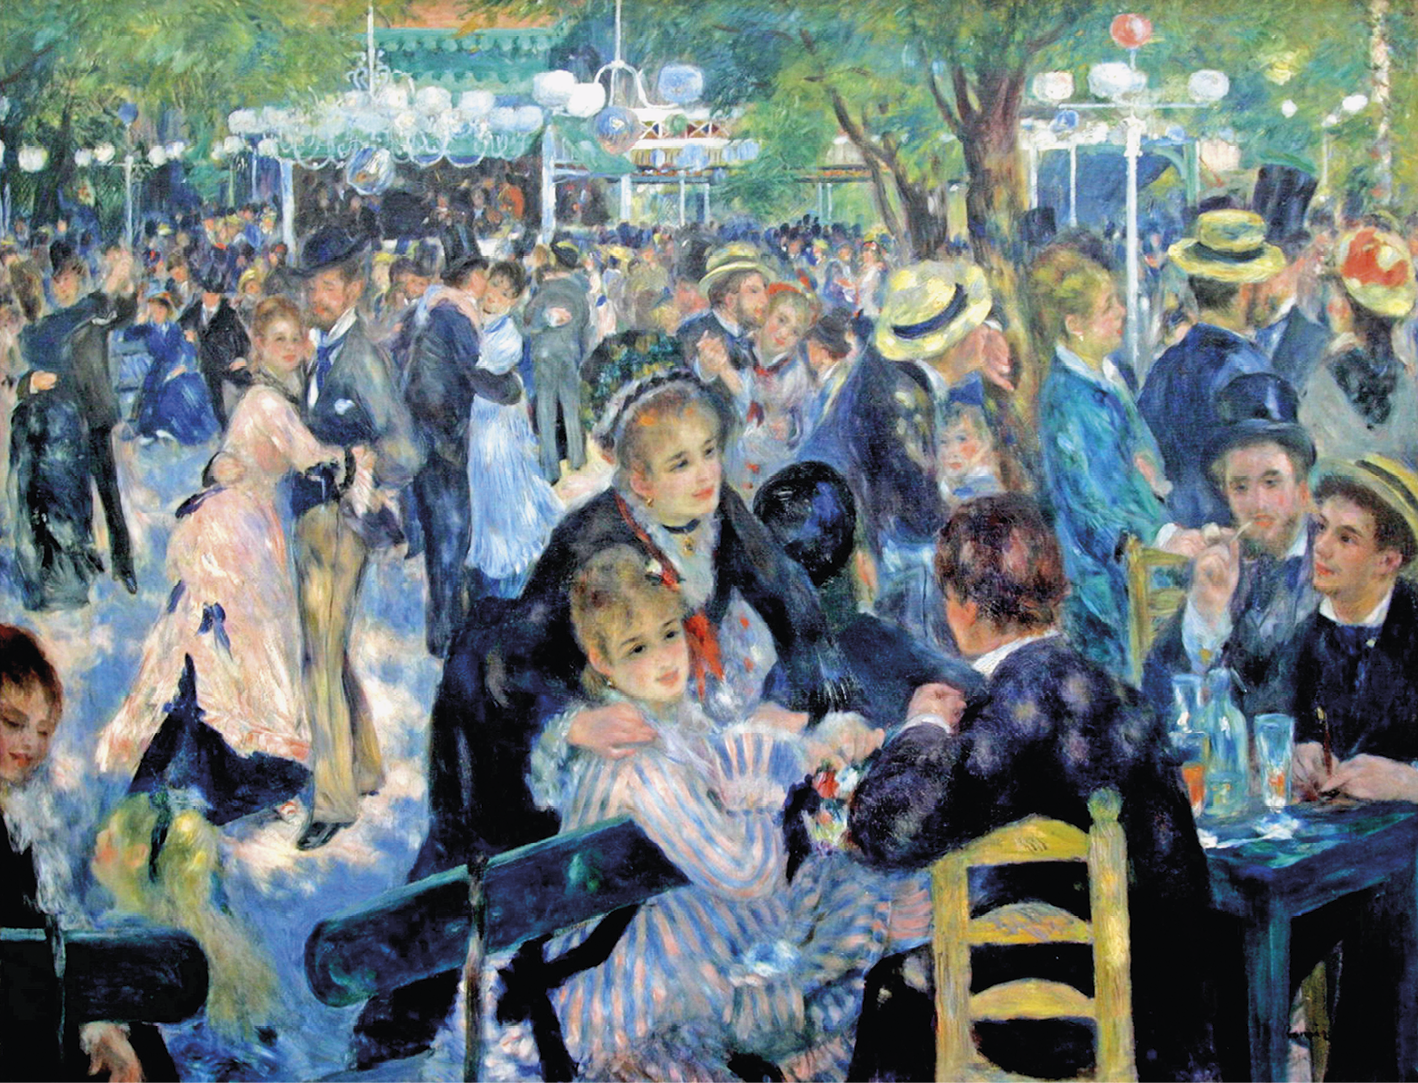 Pintura. Homens e mulheres reunidos em uma área arborizada. As mulheres usam vestidos longos e os homens roupa social e chapéu. À frente, um grupo está sentado, com copos sobre a mesa. Há luminárias entre as árvores.